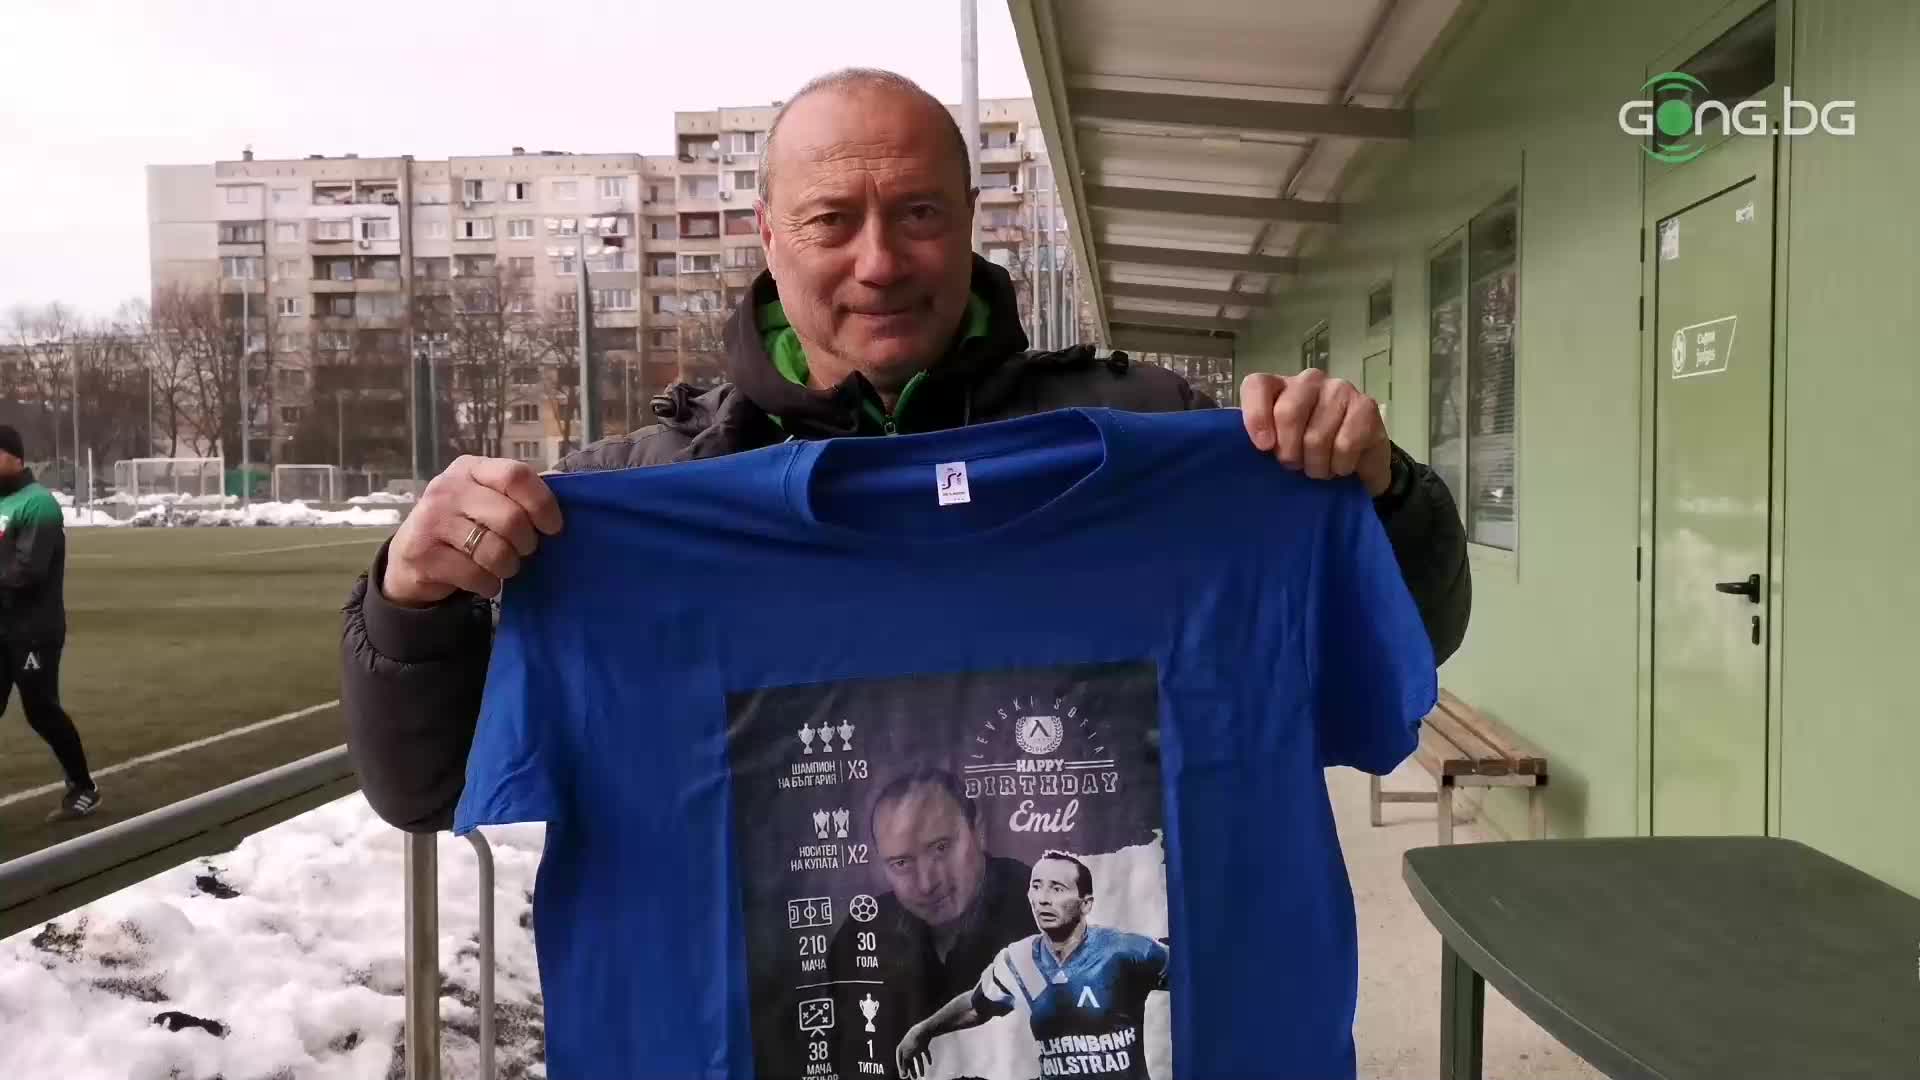 Емил Велев със специален подарък по случай 60-годишнината си